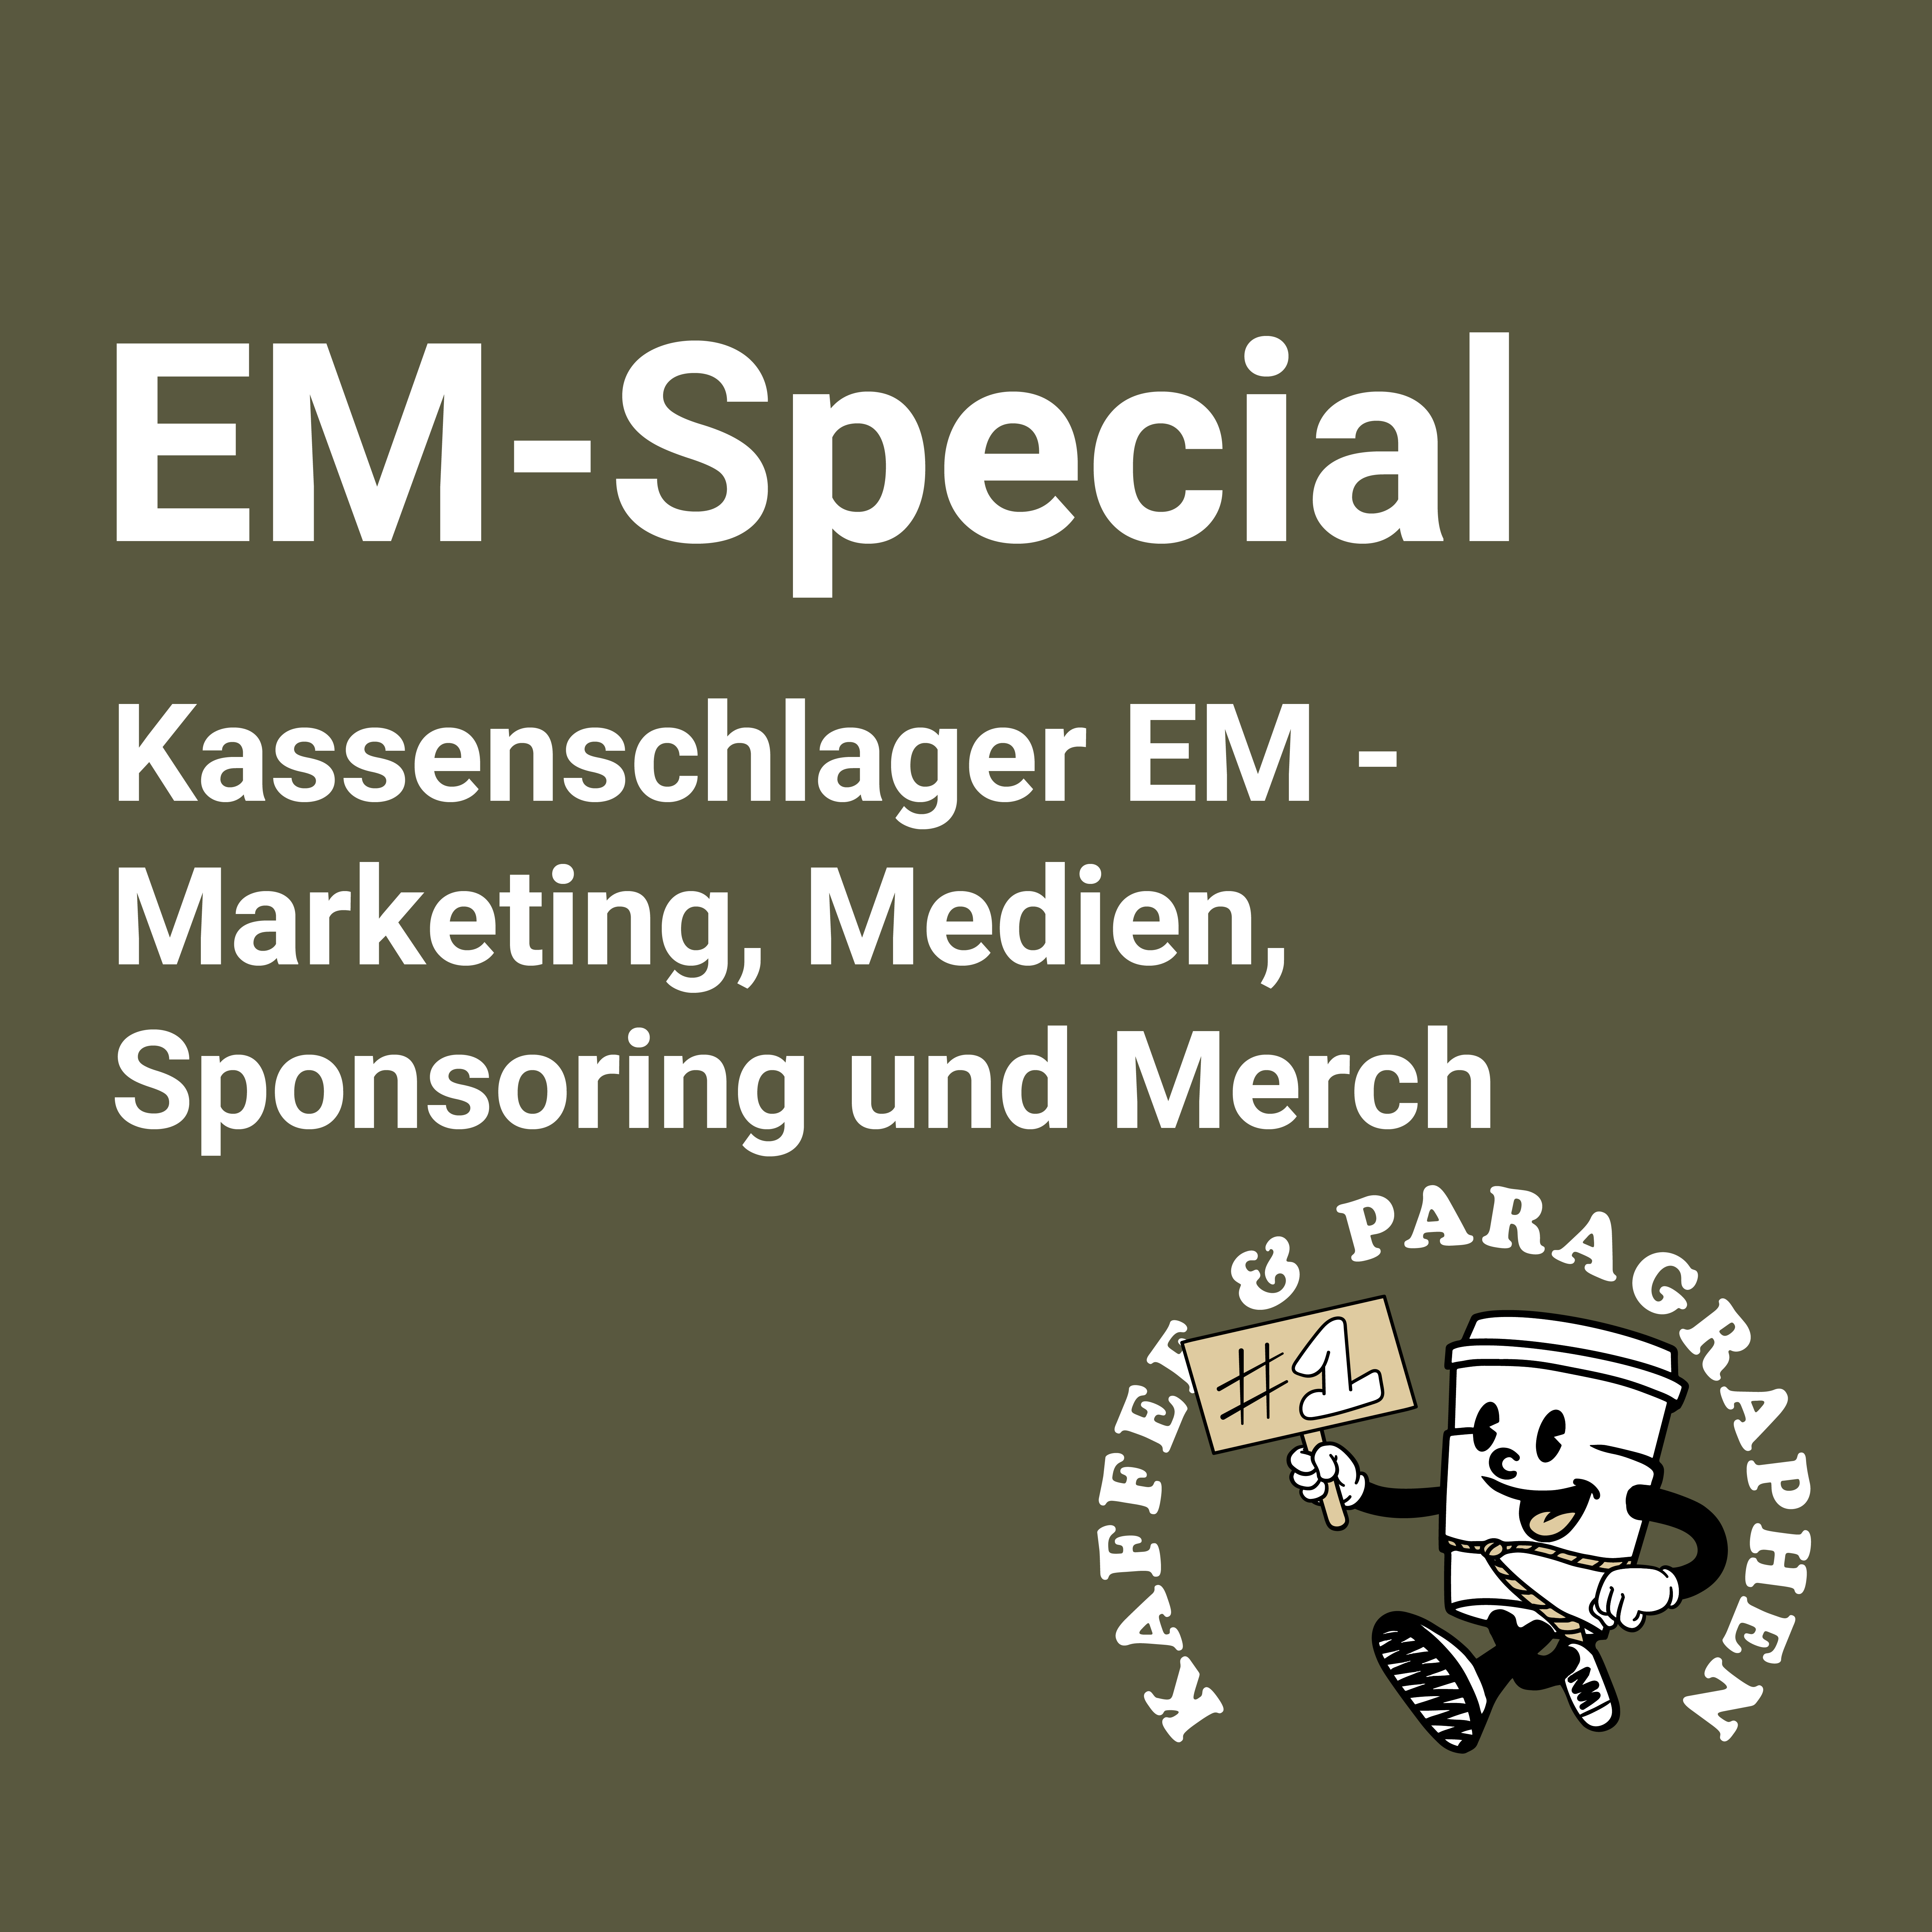 Kassenschlager EM - Marketing, Medien, Sponsoring und Merch E-042.1